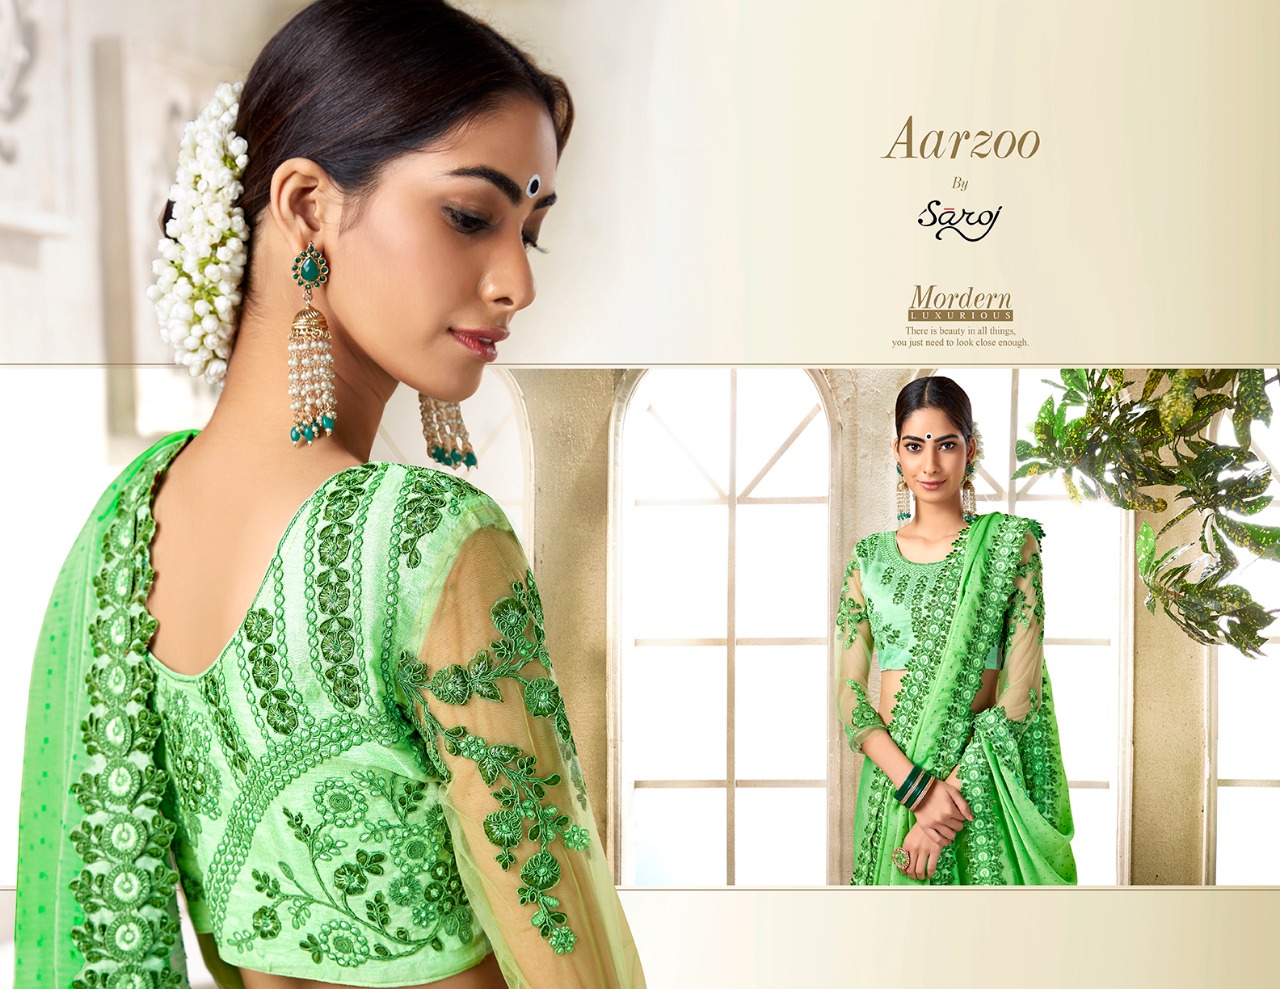 Saroj Aarzoo premium collection of designer sarres